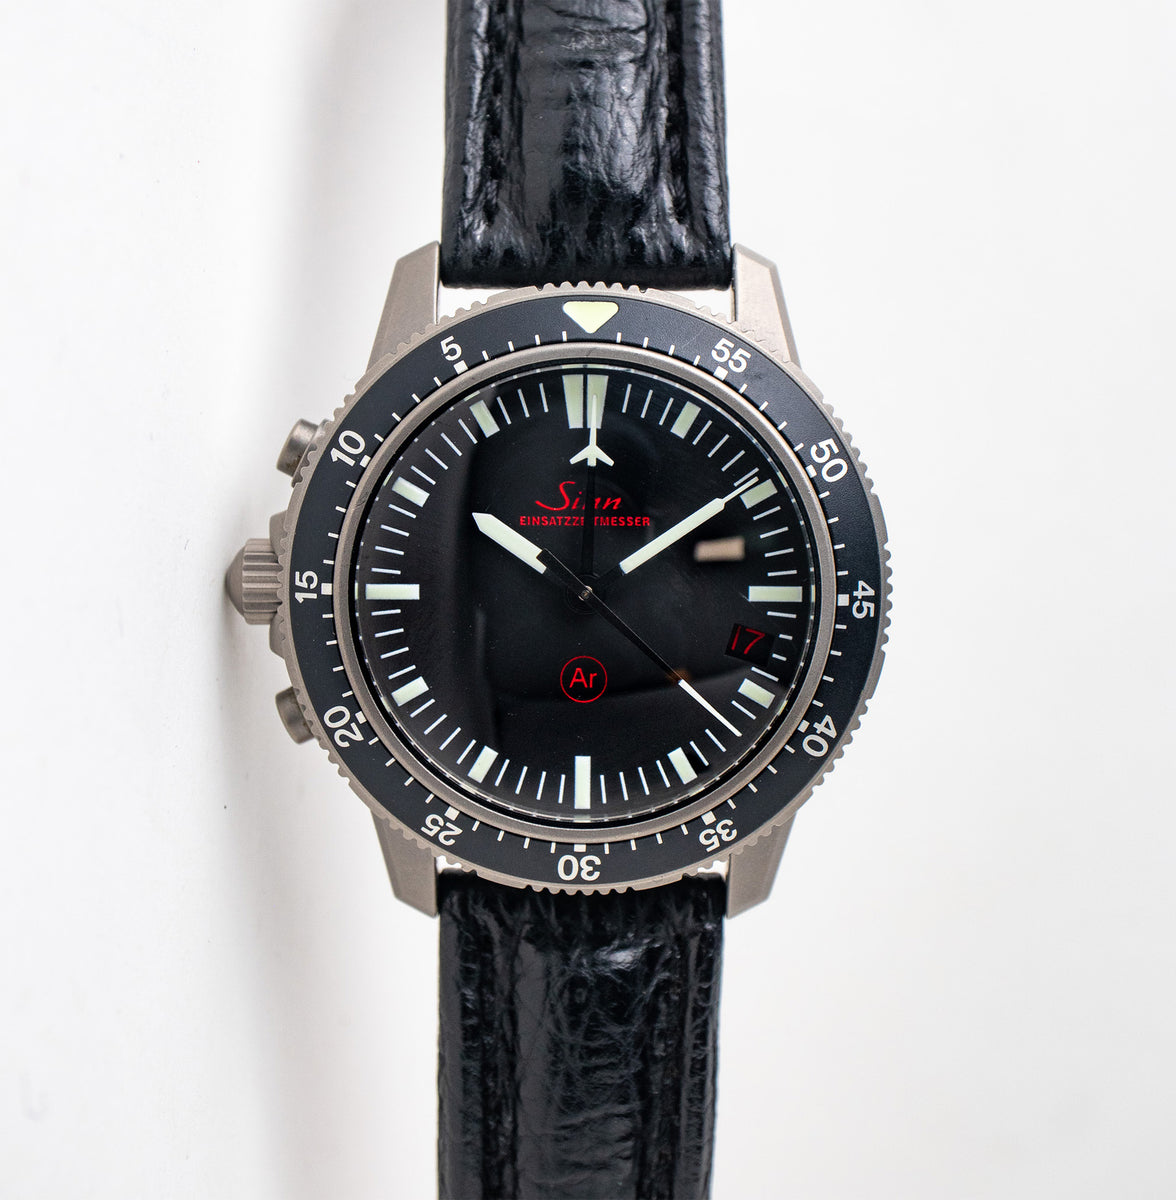 Sinn Modell EZM 1 503.010 – Belmont Watches